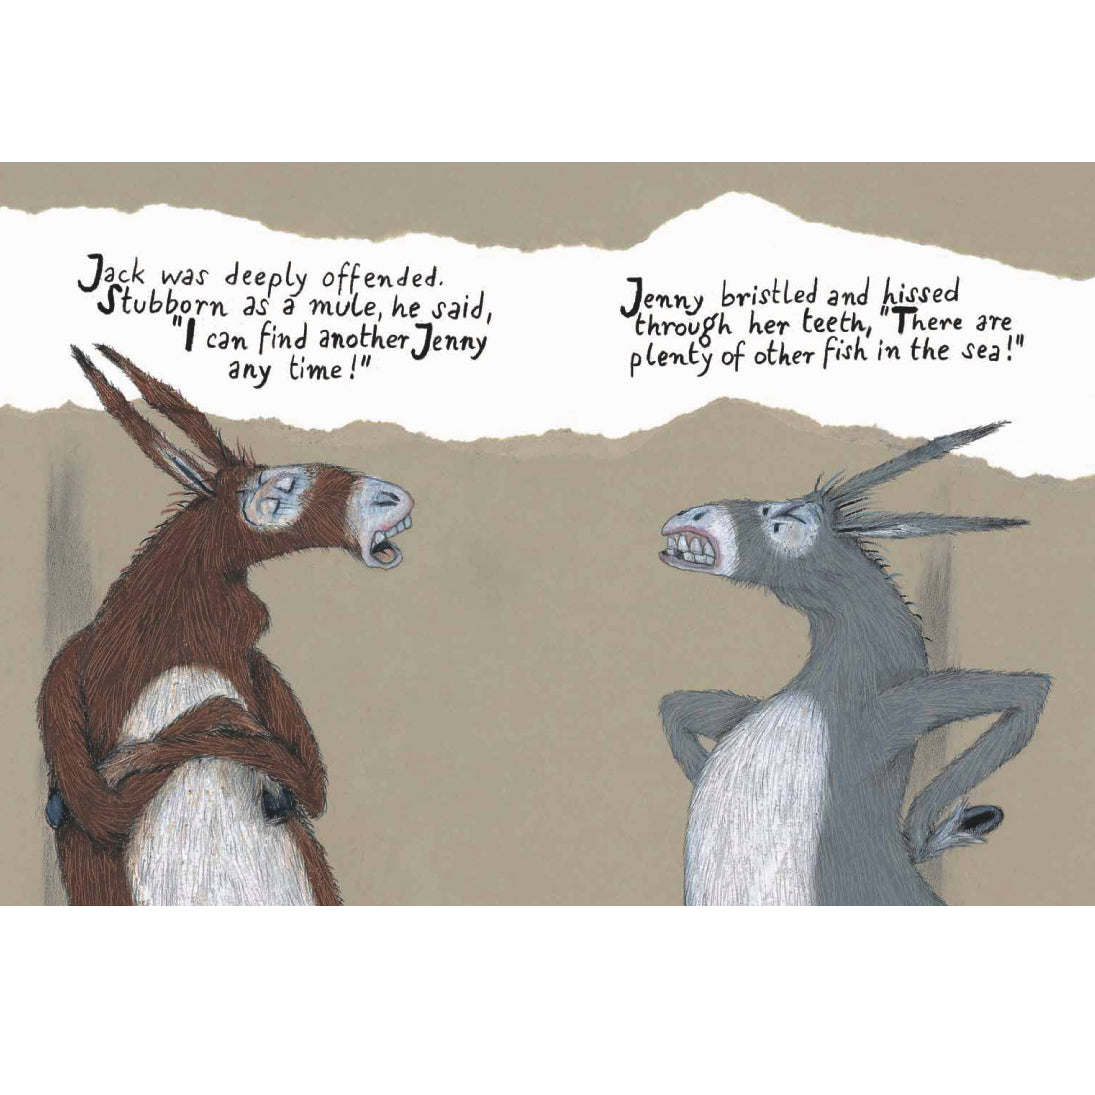 Donkeys Book